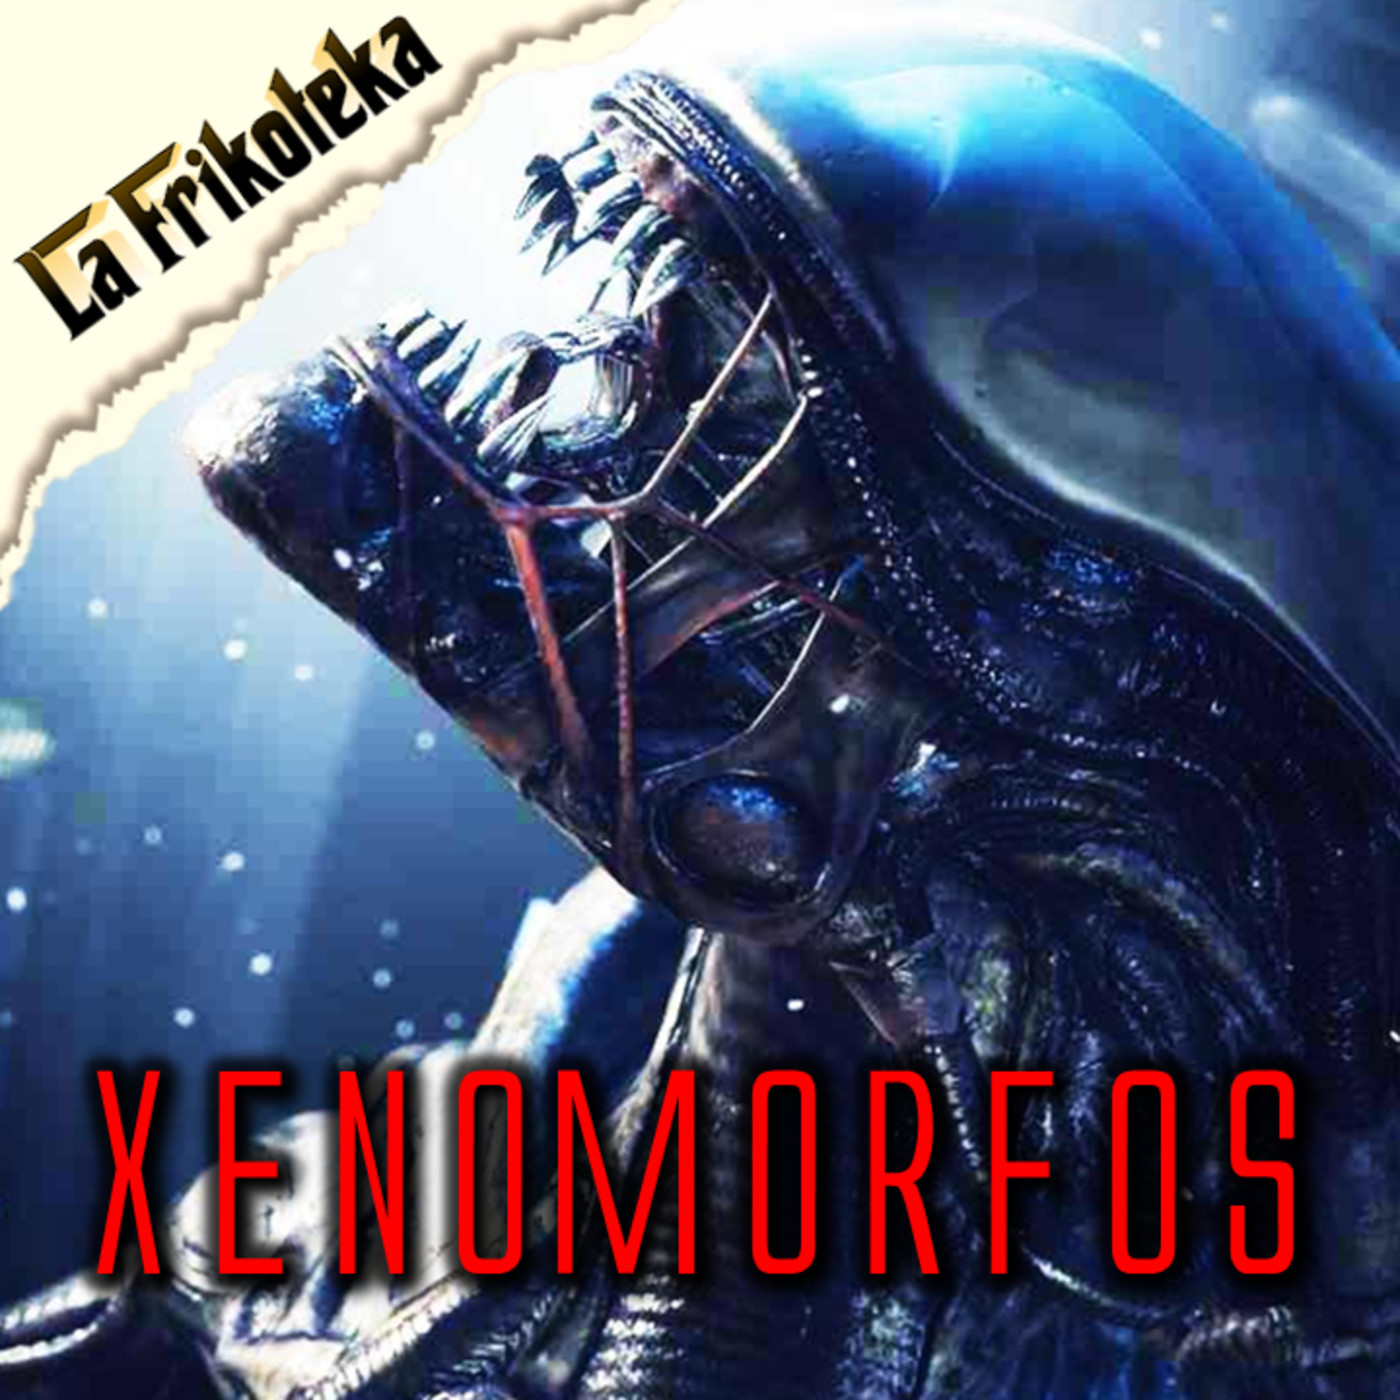 054 - Xenomorfos - Episodio exclusivo para mecenas